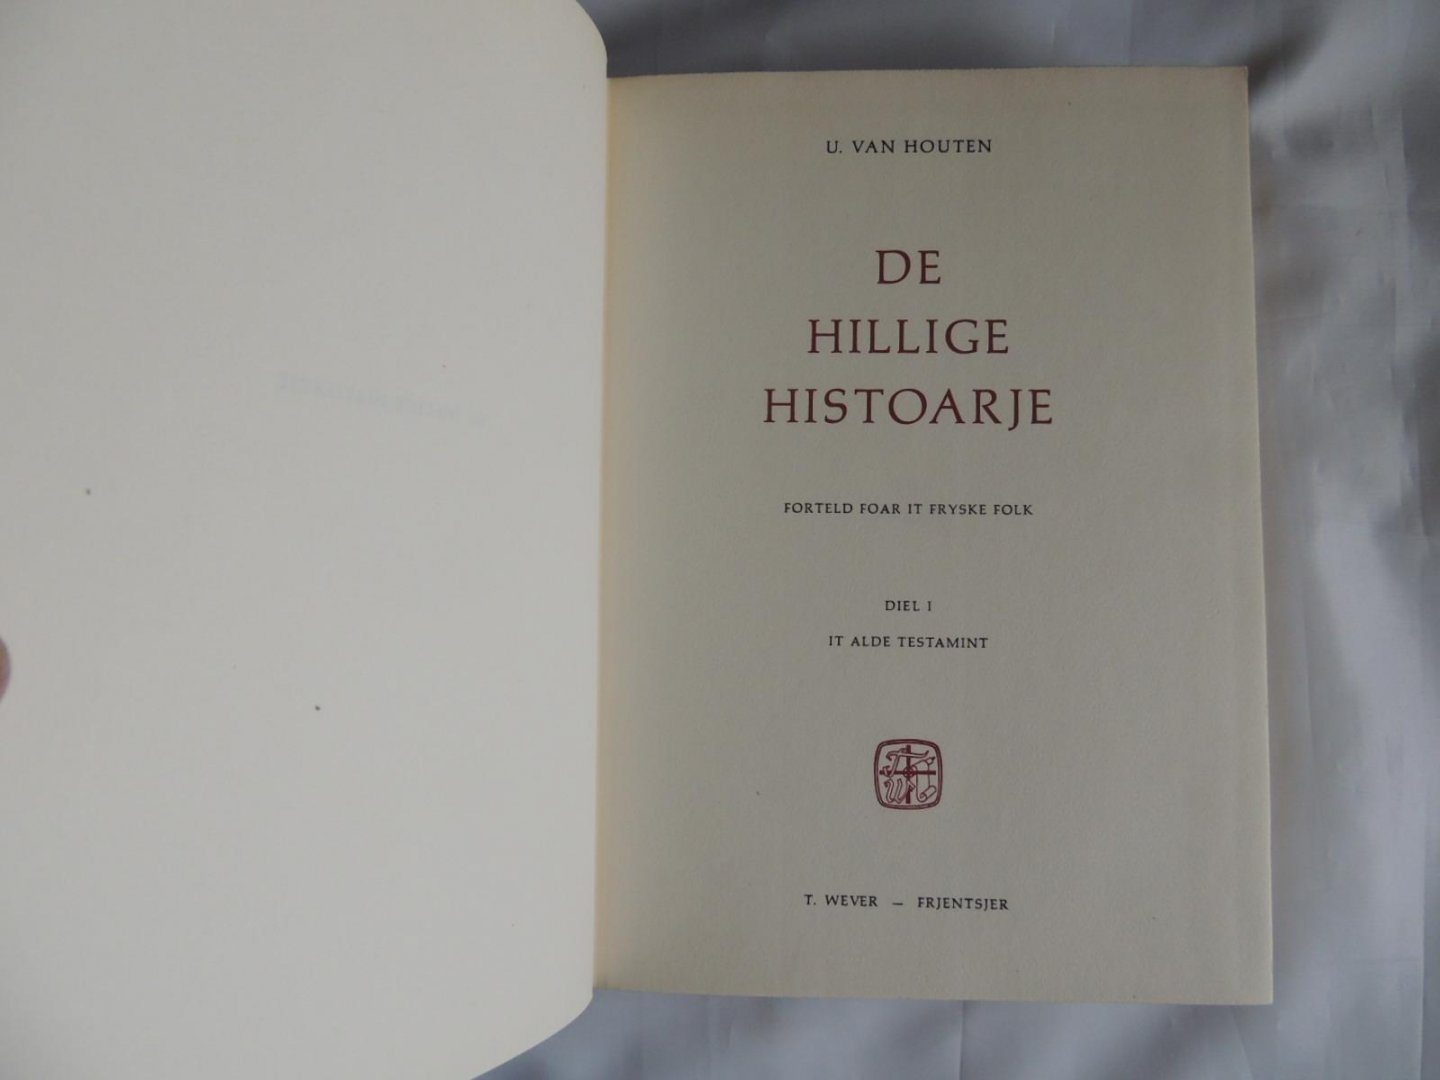 Houten van Ulbe Tekeningen van jan klaas pijlman - De Hillige Histoarje, forteld foar it Fryske folk. Diel I (It alde testamint) en Diel II (It nije testamint)